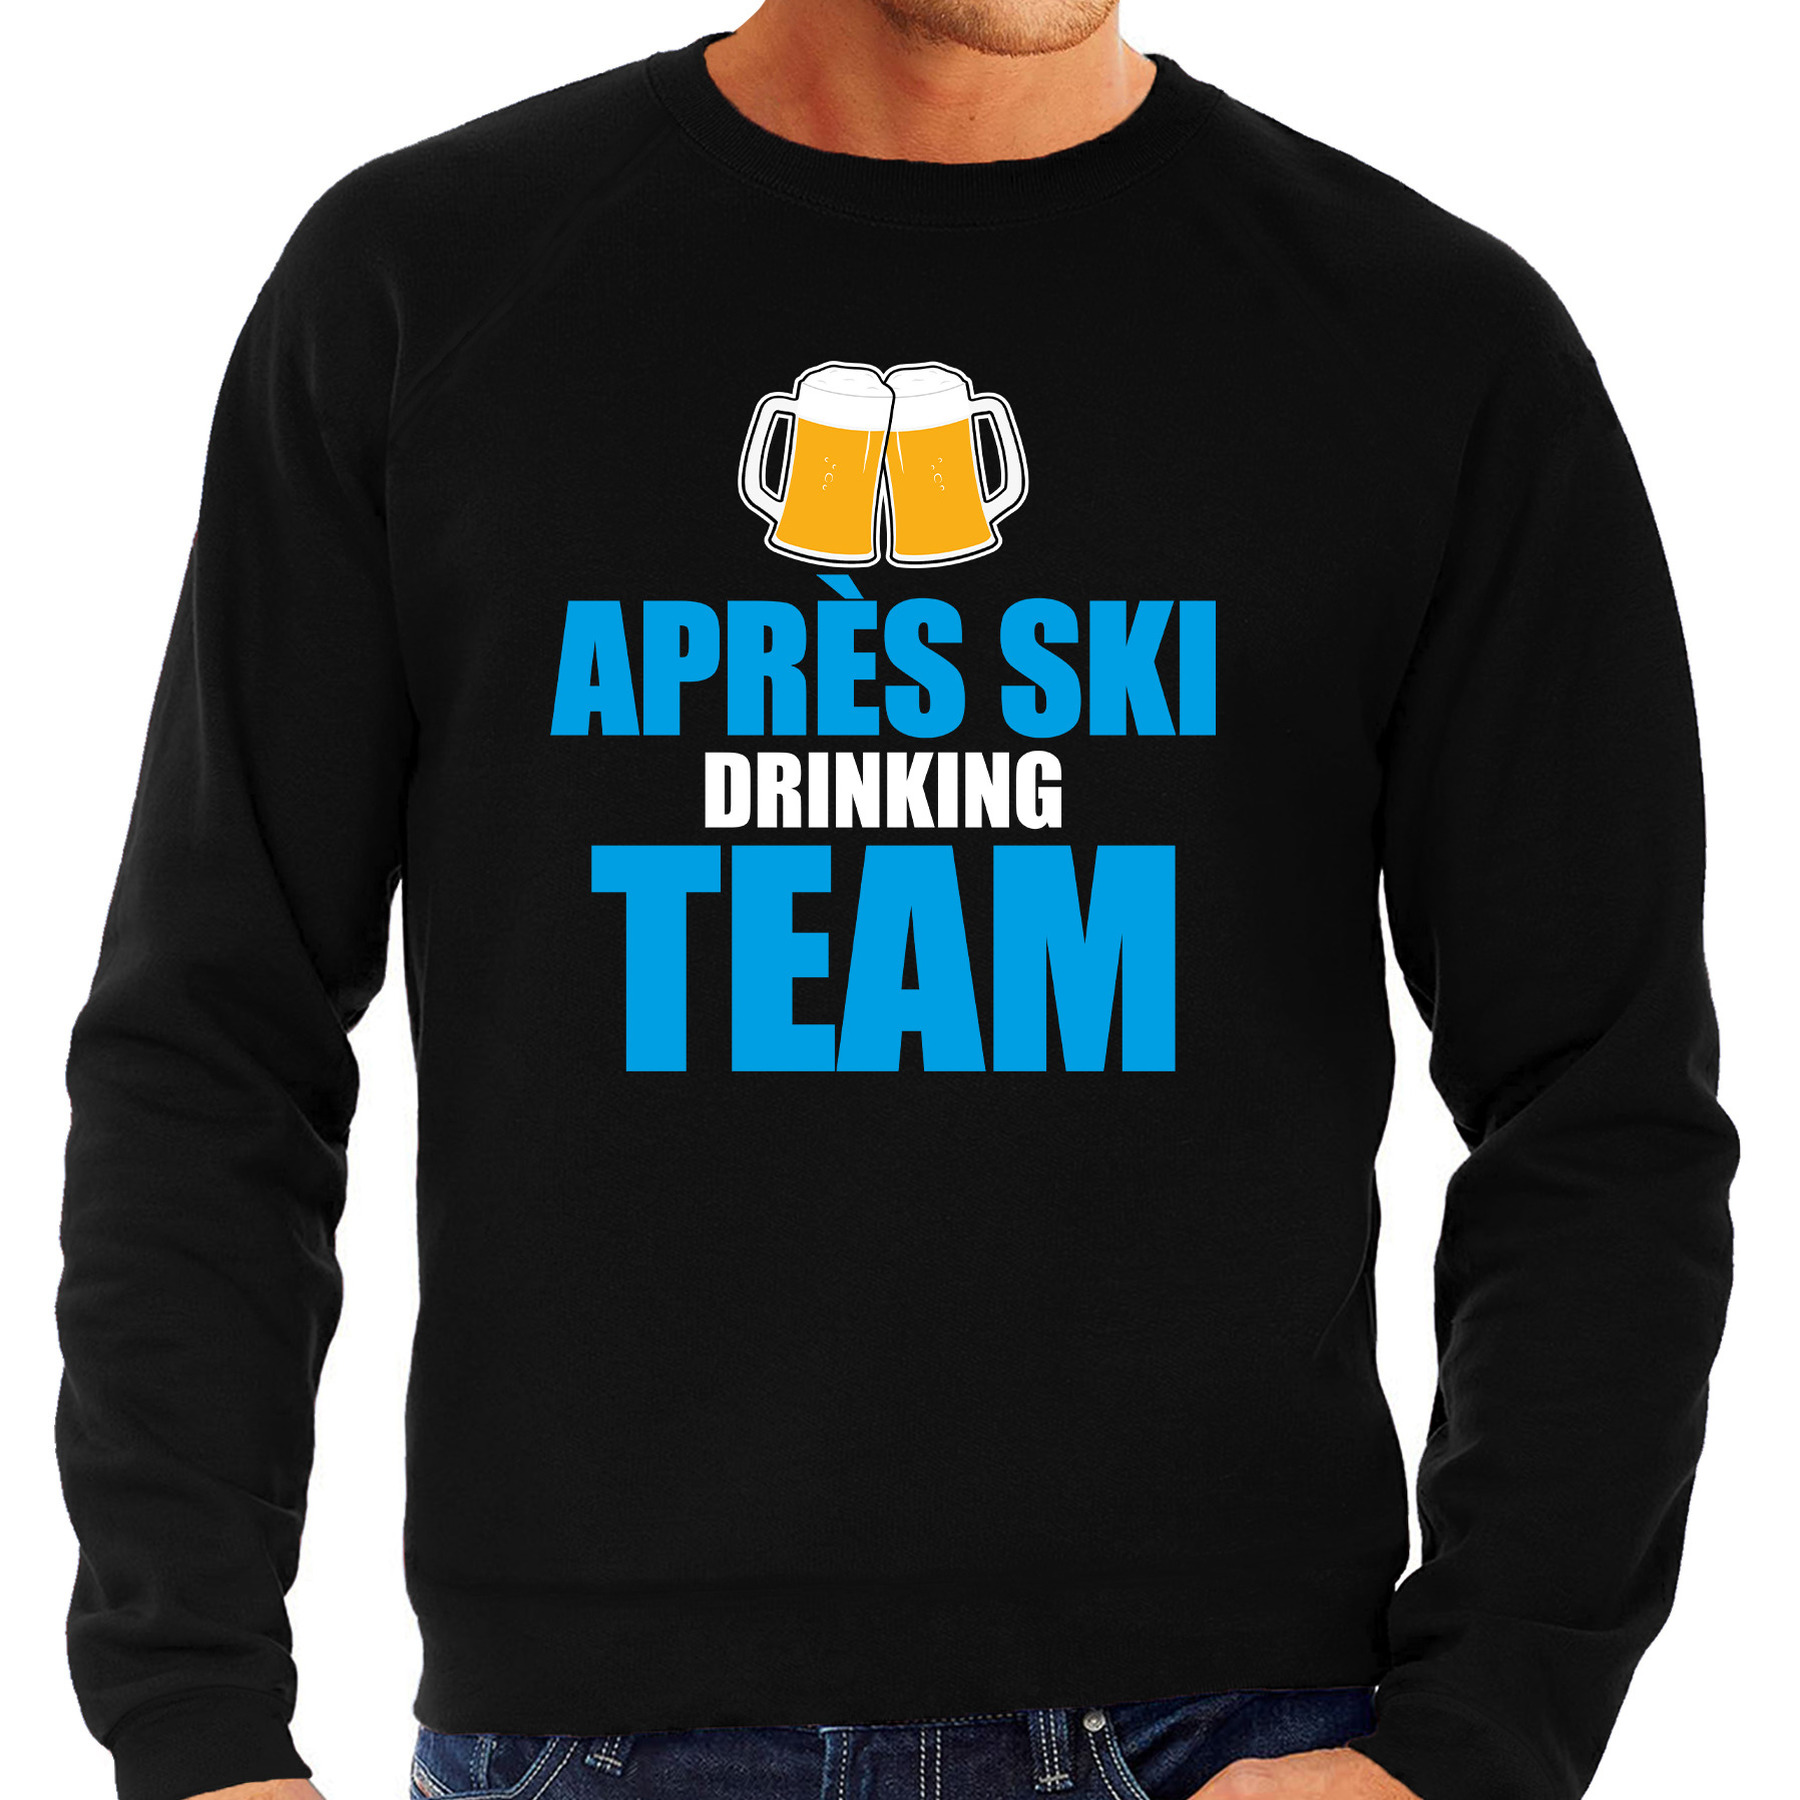 Apres ski trui Apres ski drinking team bier zwart heren Wintersport sweater Foute apres ski out